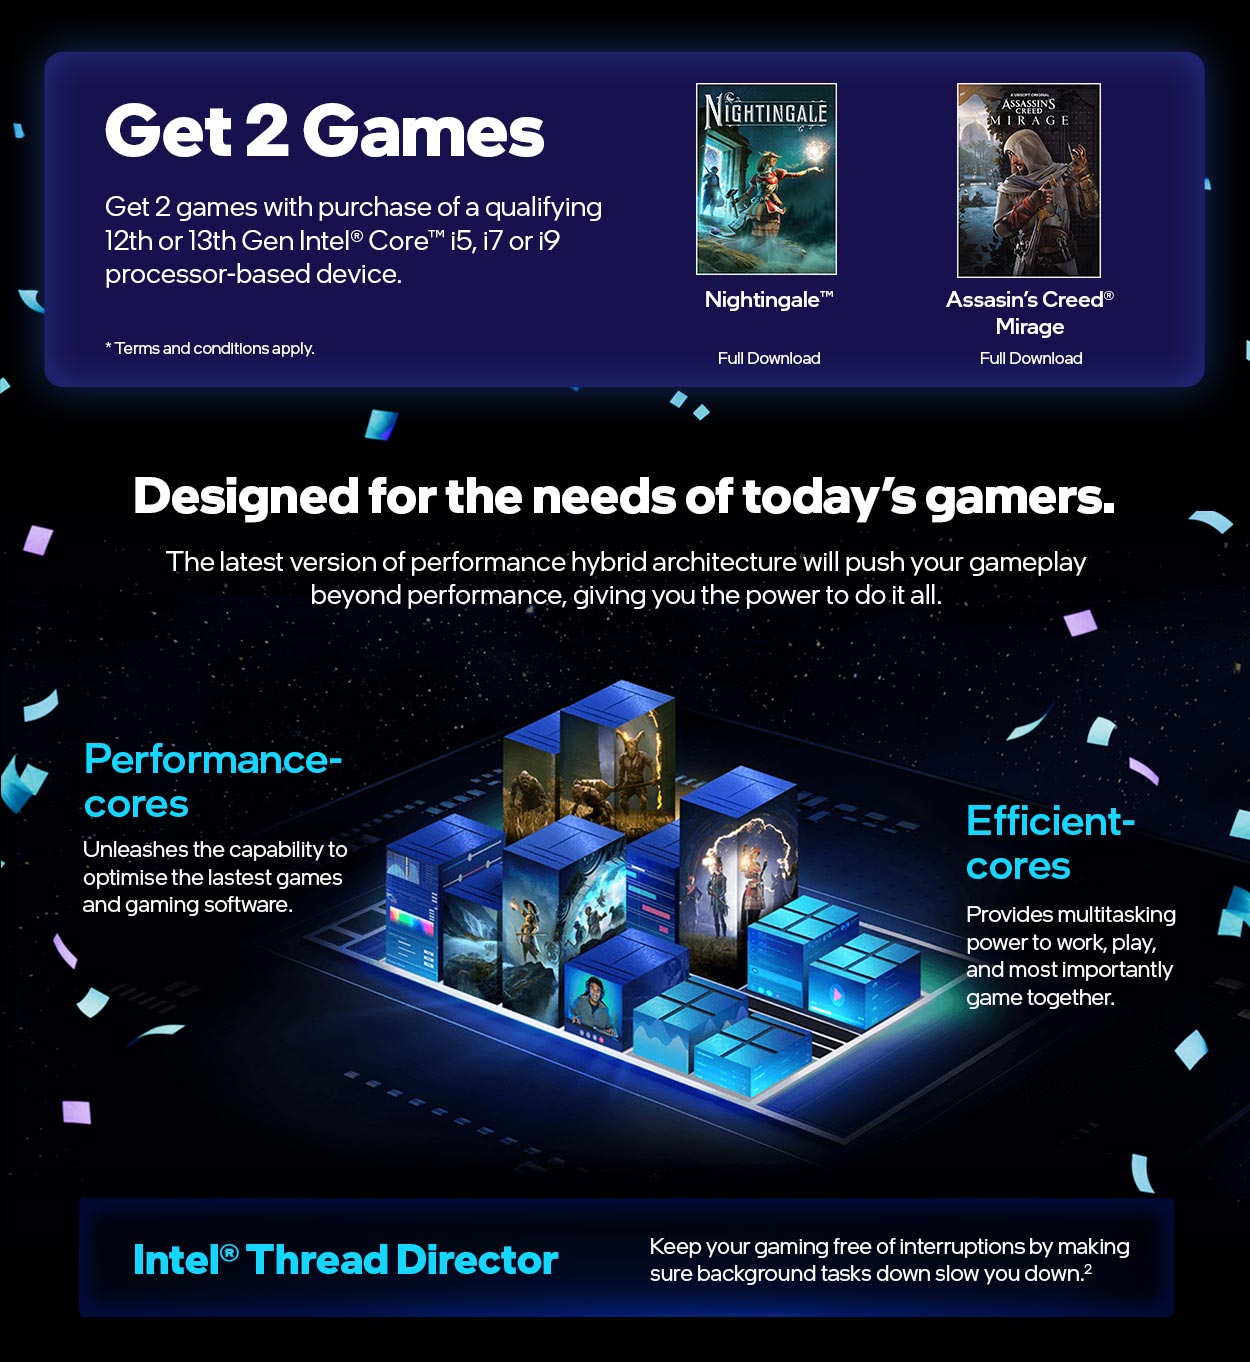 Intel Gamer Days 2023